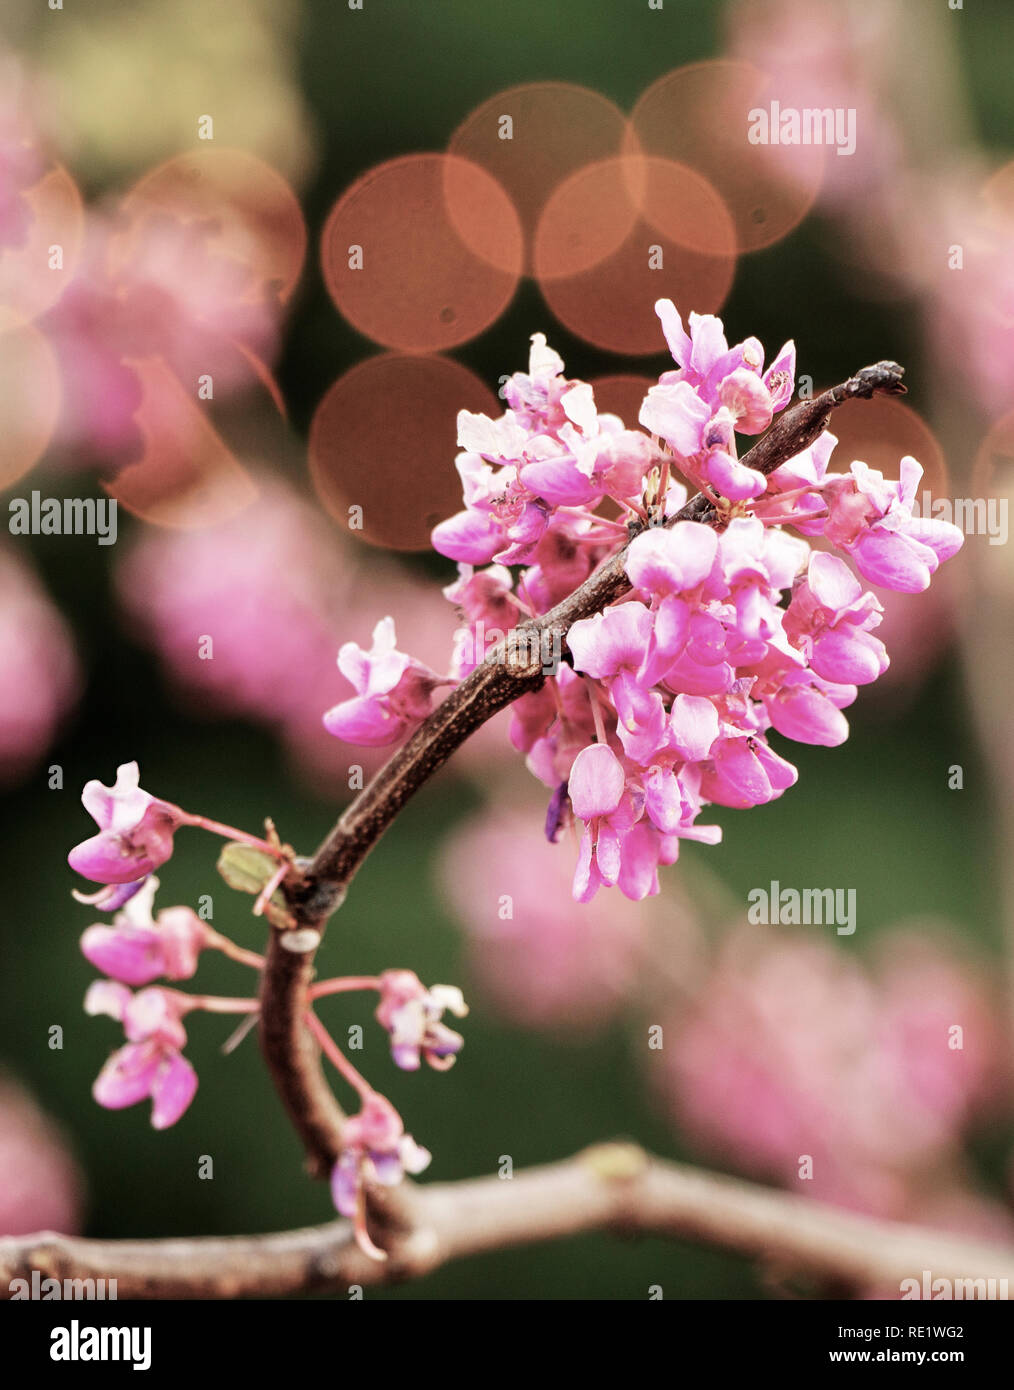 Östliche redbud blühenden Baum Stockfoto